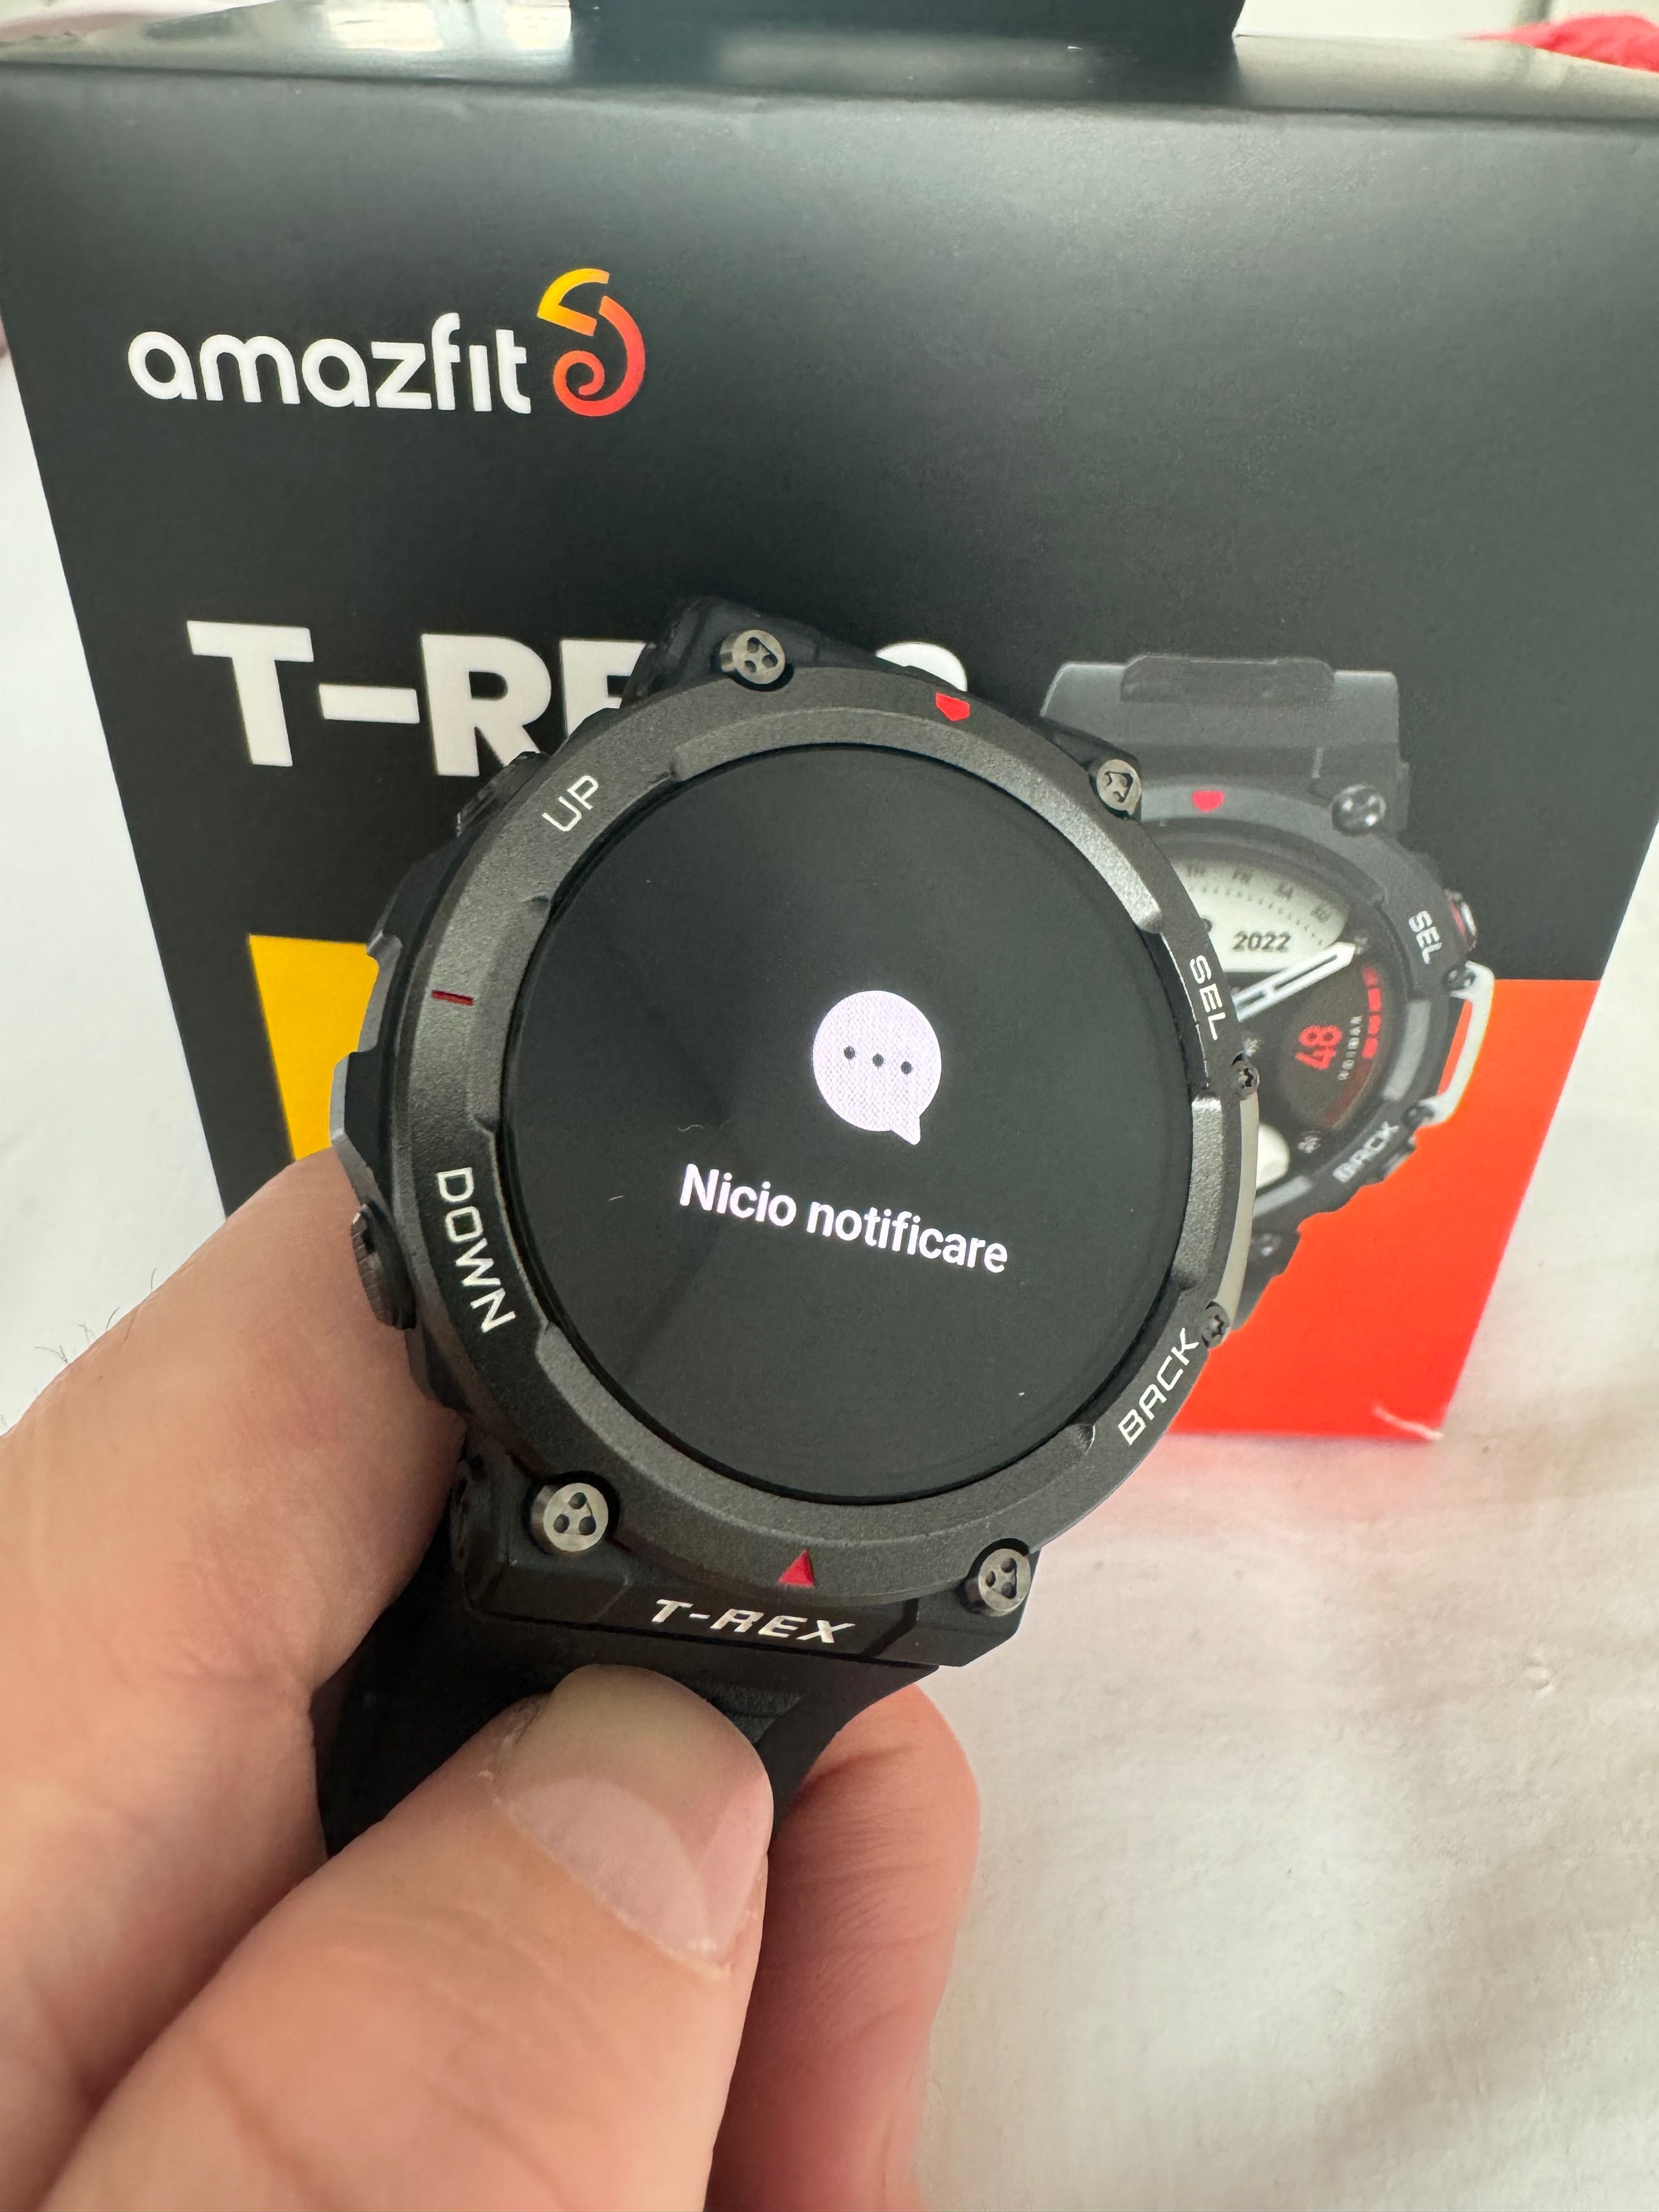 Smartwatch Amazfit Trex 2 Xiaomi